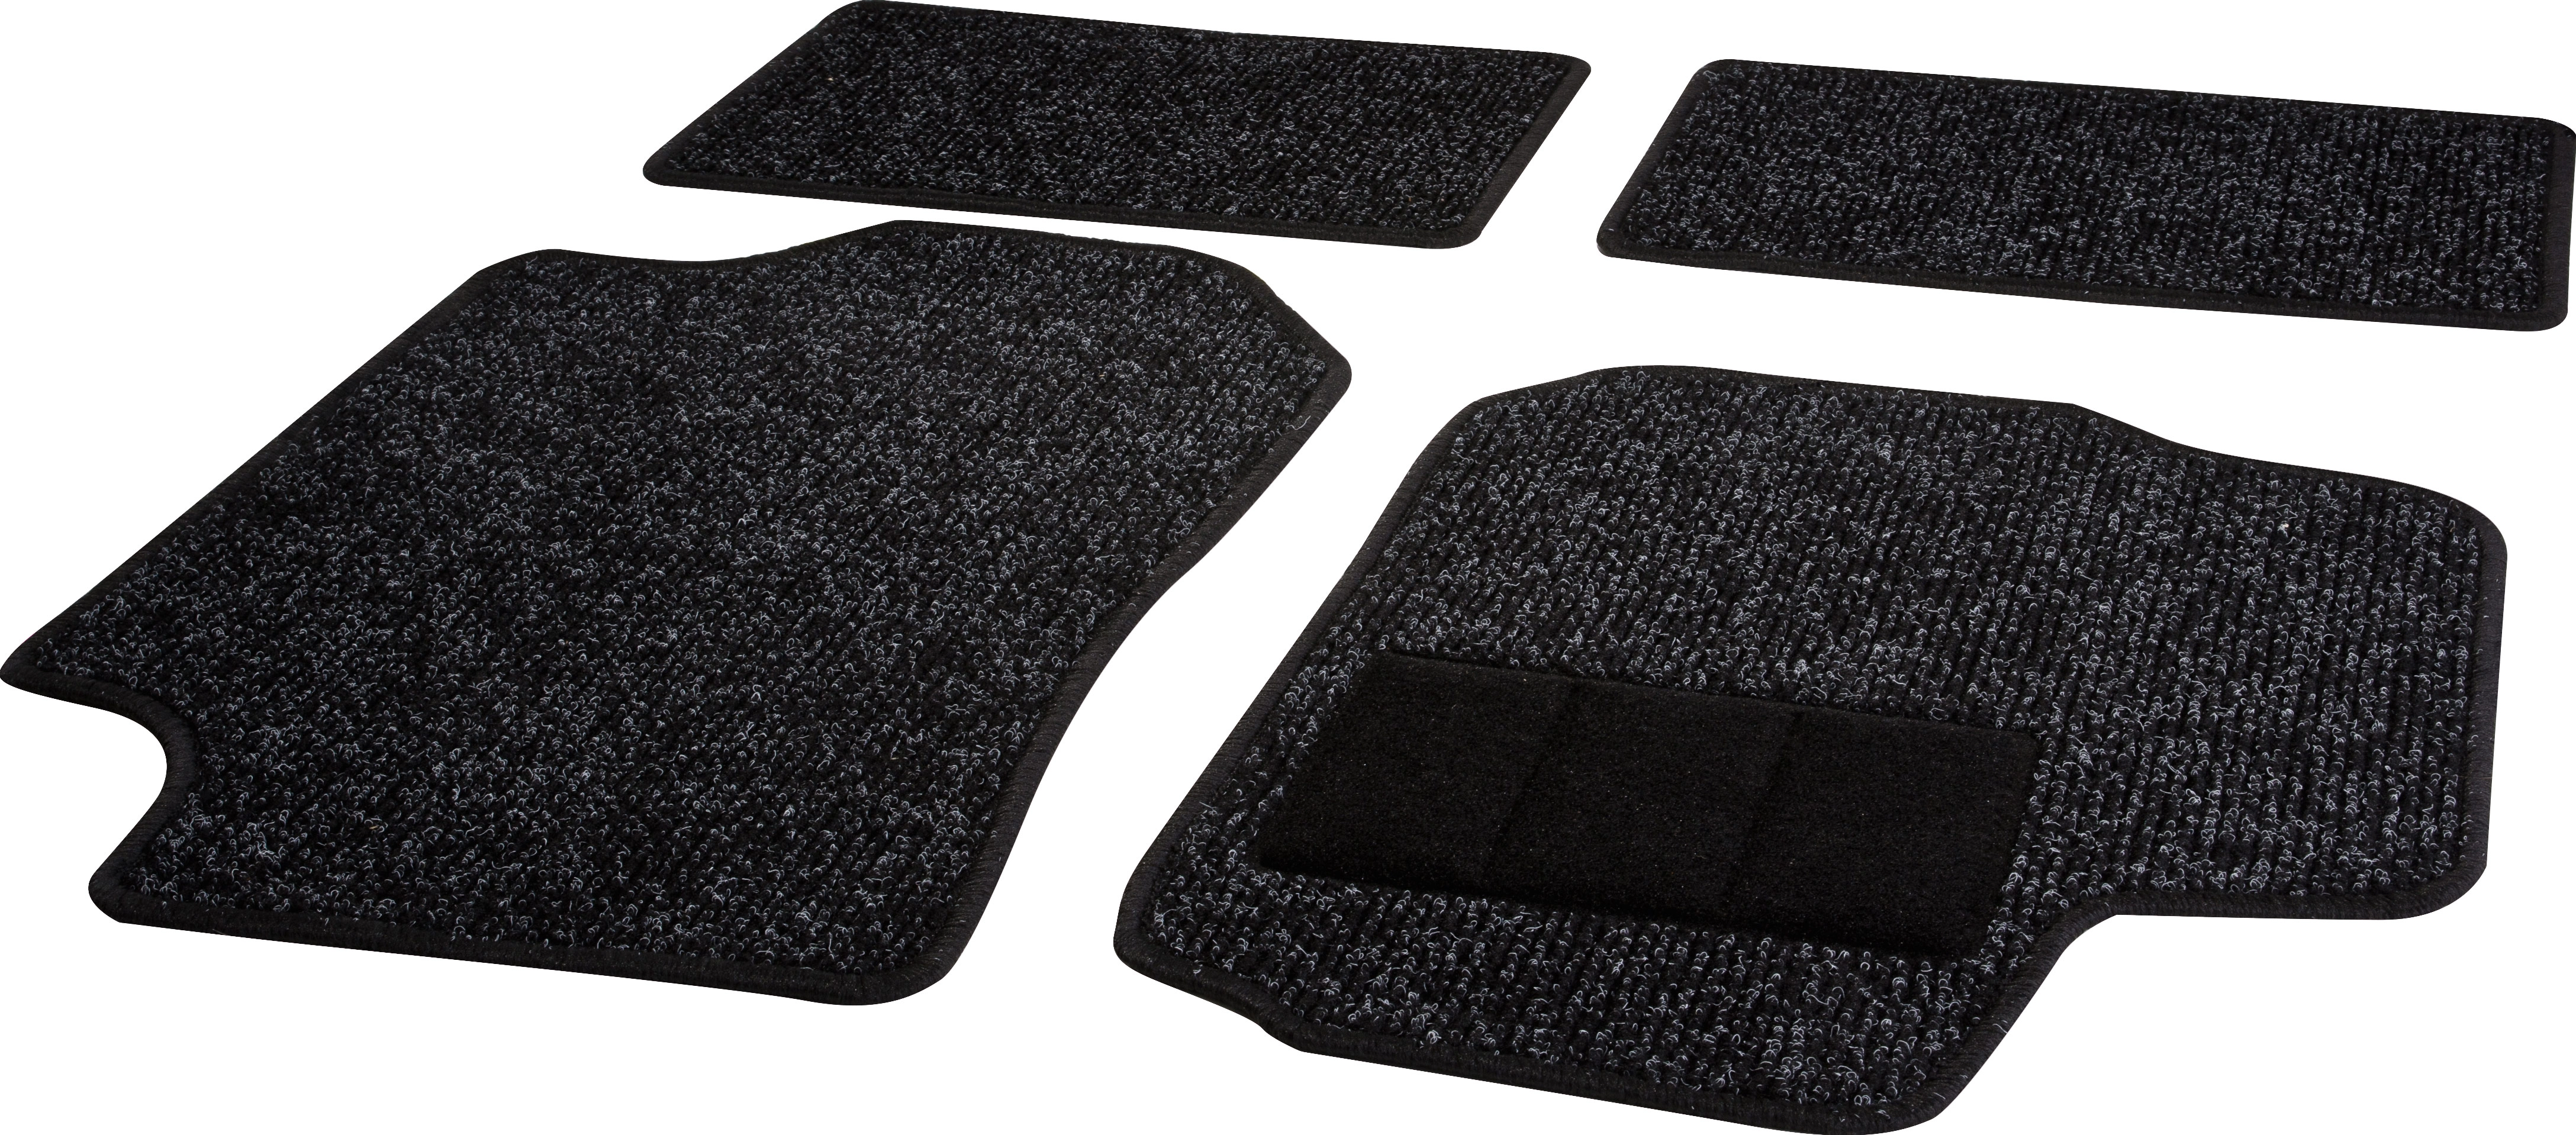 OBI Textilfußmatten-Set Größe B 4-teilig kaufen bei OBI